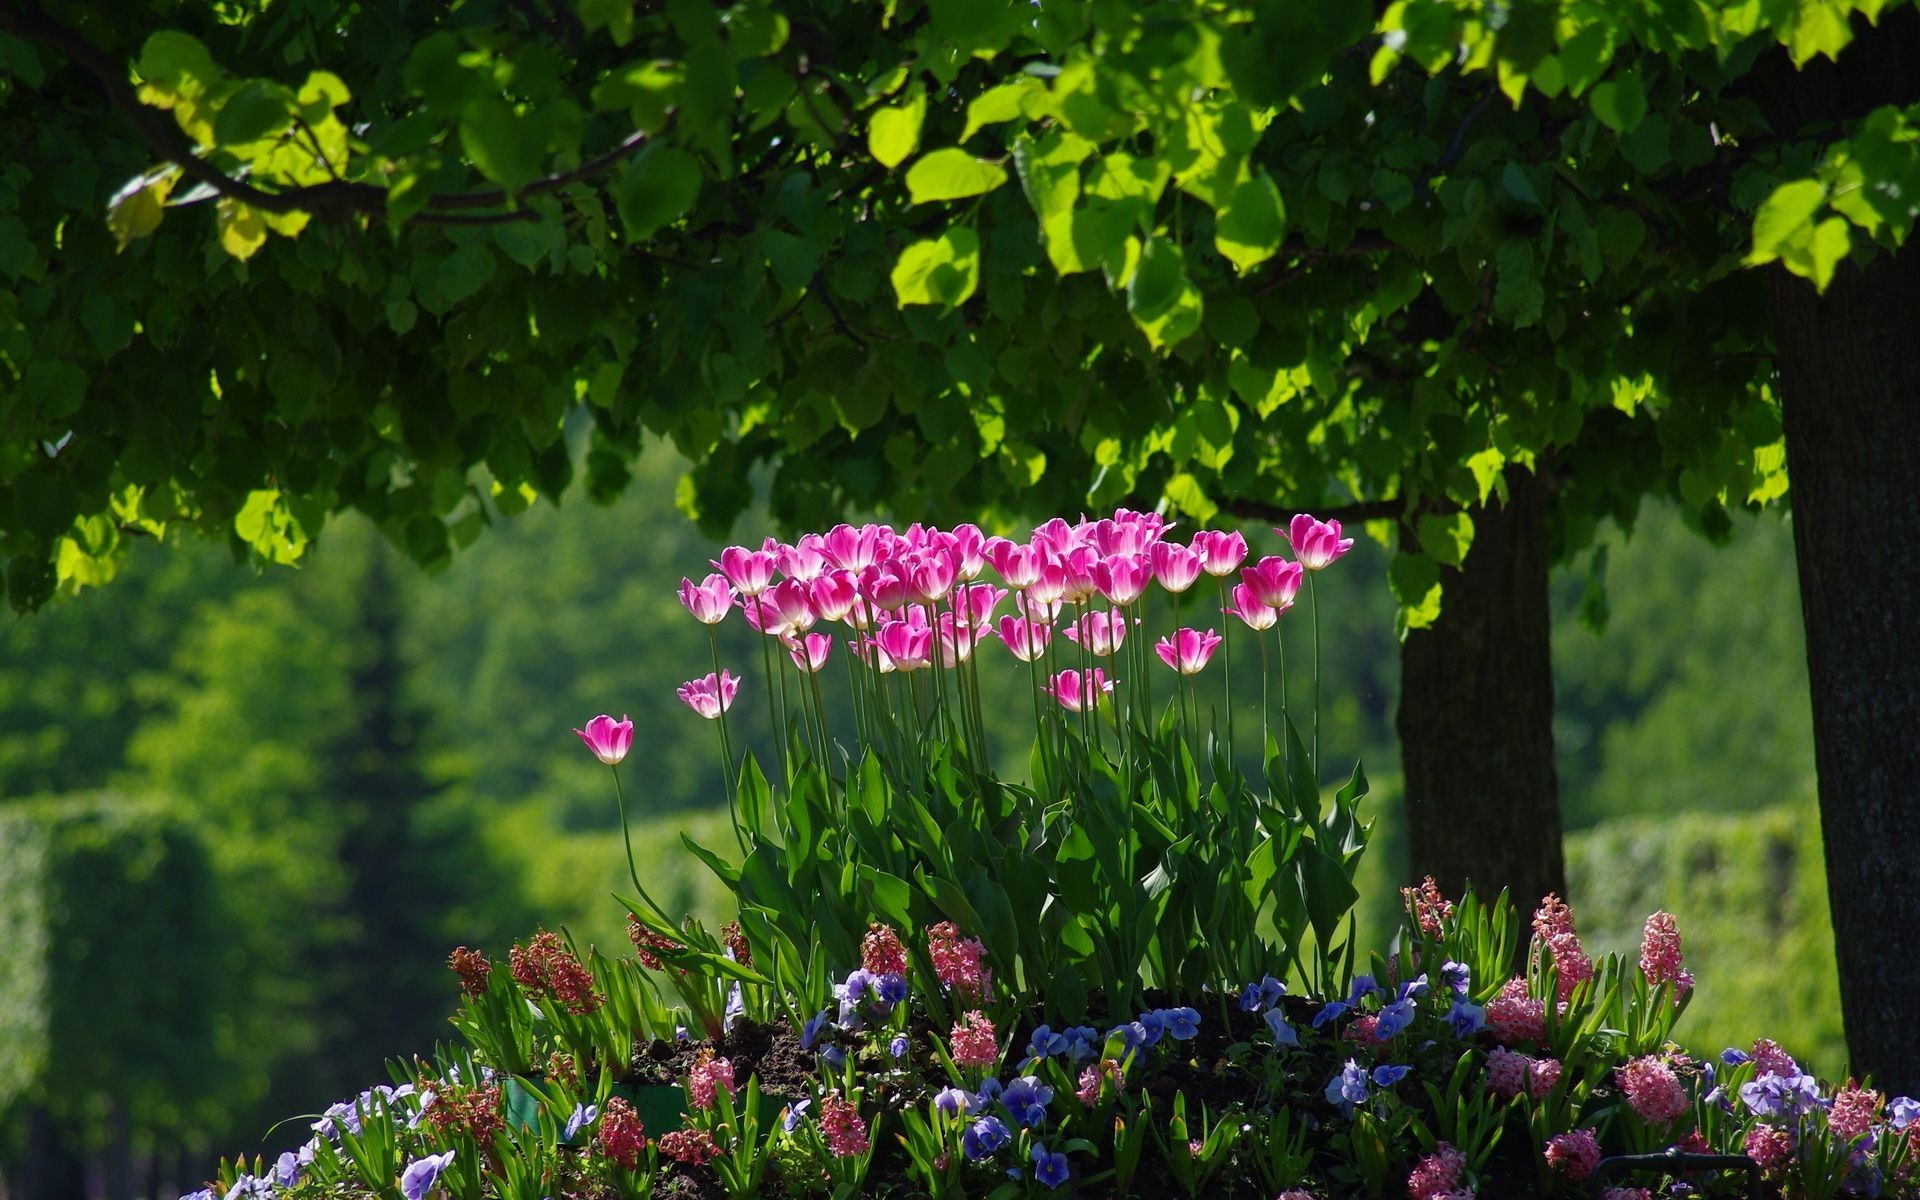 клумбы с цветами цветок сад природа лист флора лето парк трава блюминг дерево цветочные цвет пейзаж газон тюльпан рост на открытом воздухе сезон яркий